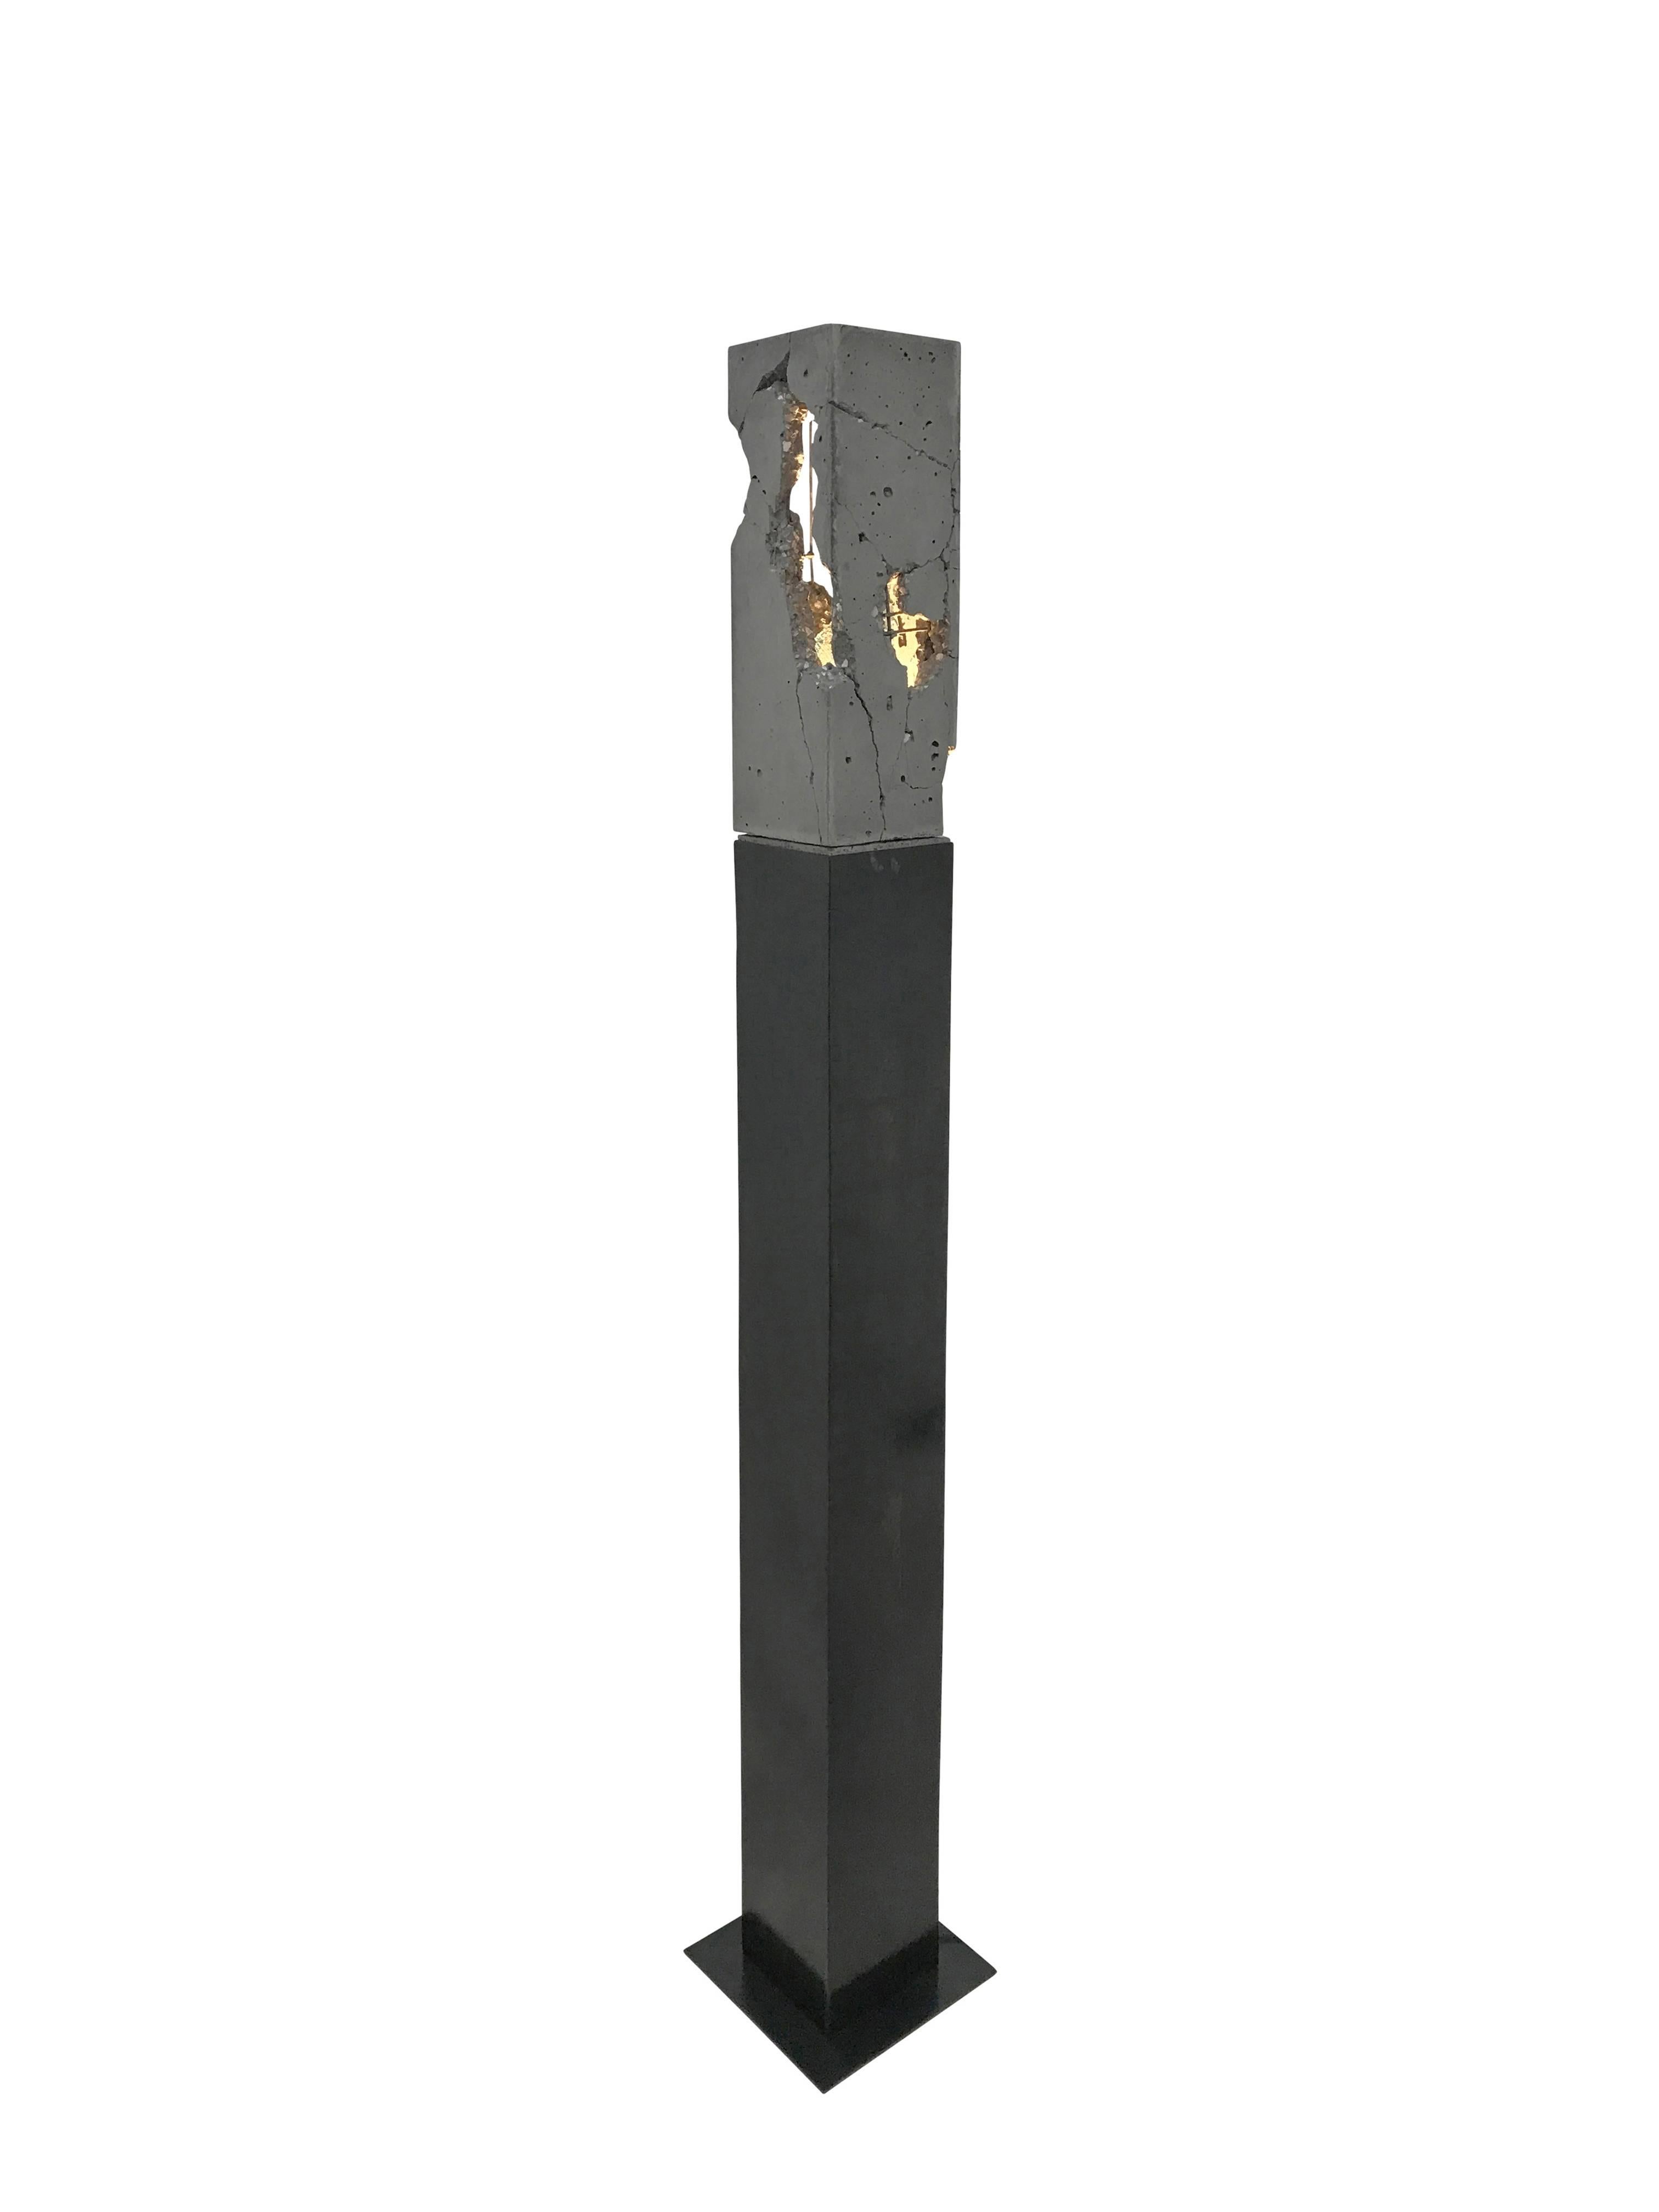 Fractured Cast-Concrete-Ständer „Scarpa Light“ „Scarpa Light“ aus Nussbaumholz oder geschwärztem Stahlsockel (amerikanisch) im Angebot